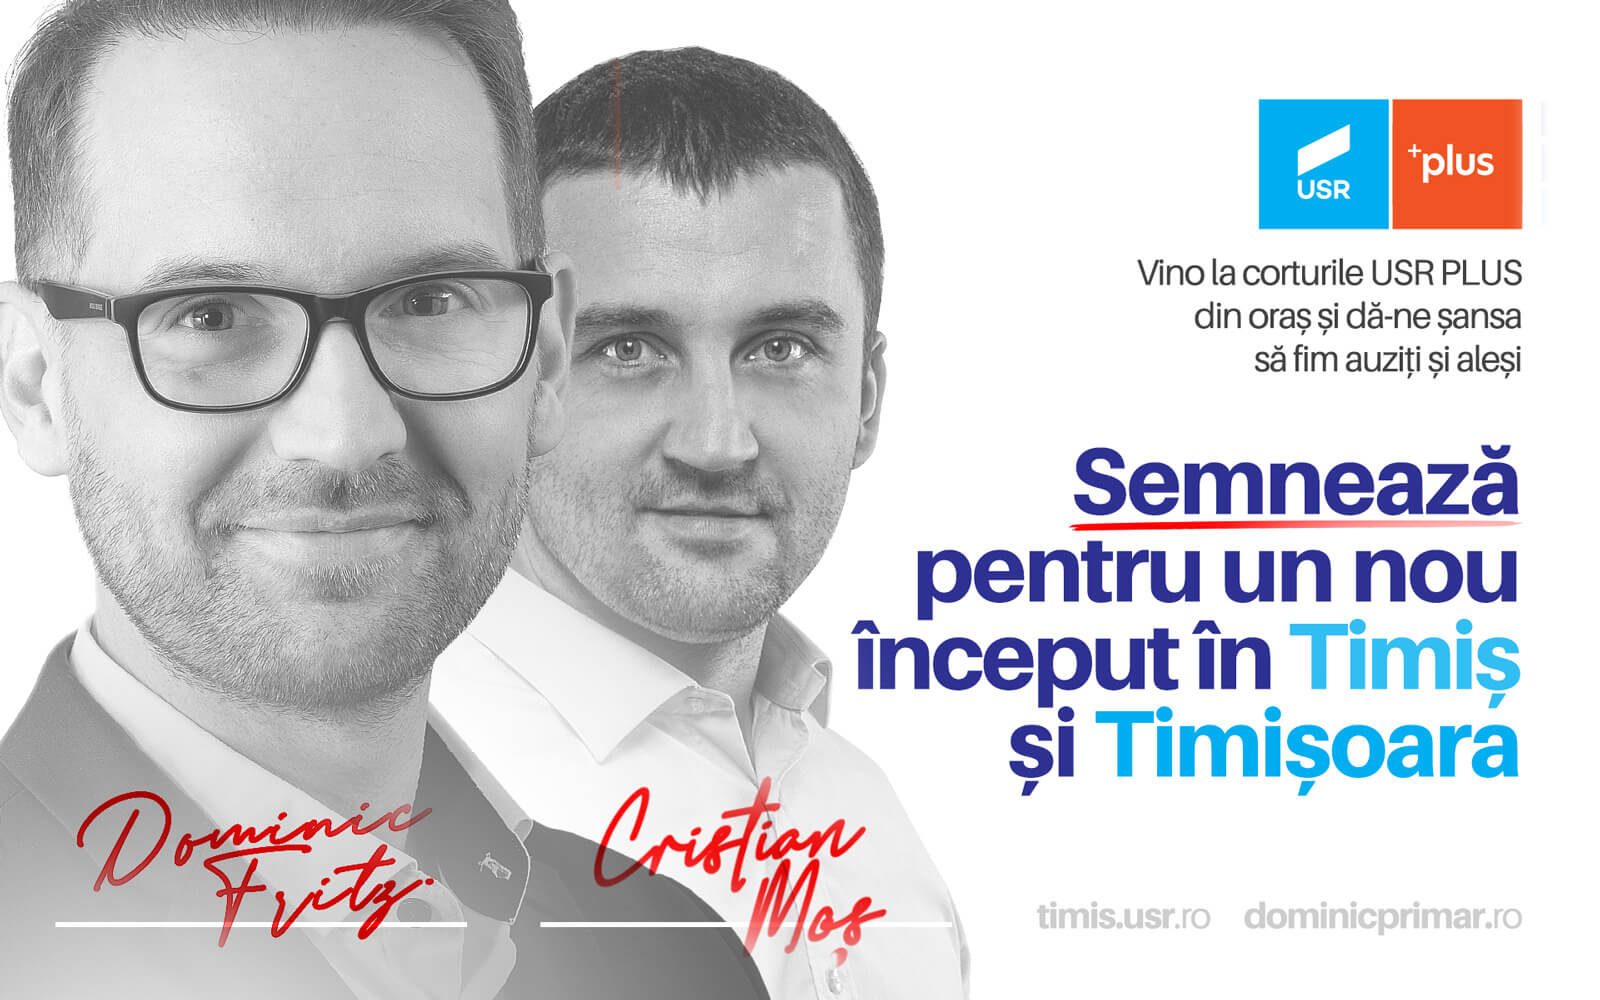 Unde semnezi pentru Dominic Fritz, candidat USR-PLUS la Primăria Timișoara și Cristian Moș, candidat USR-PLUS la Consiliul Județean Timiș